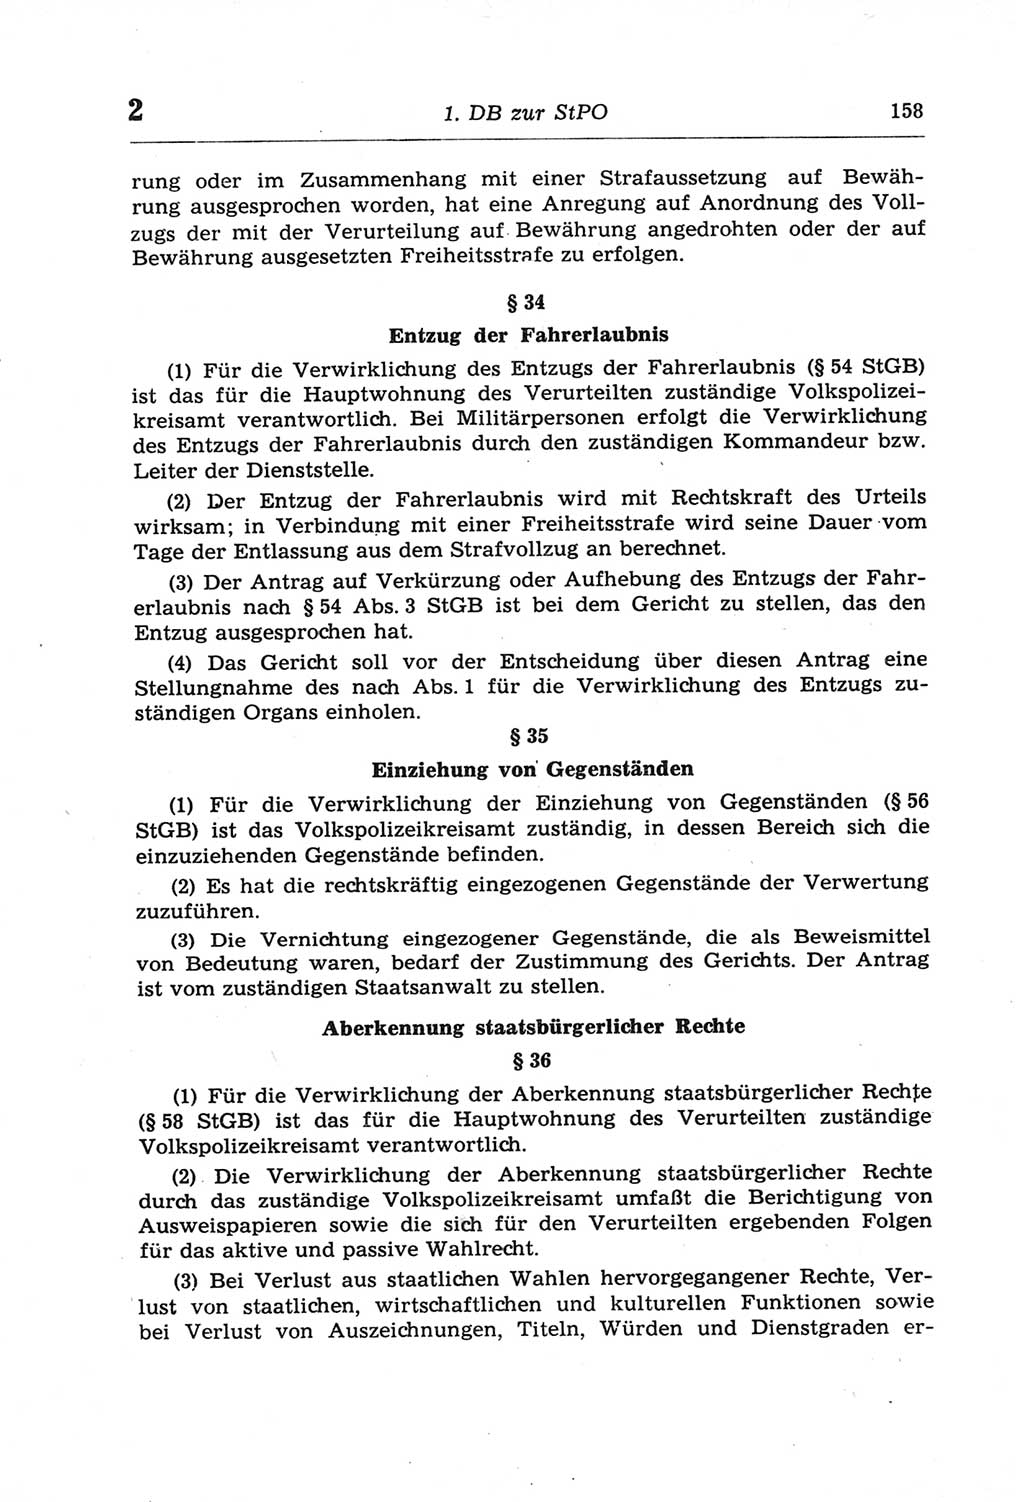 Strafprozeßordnung (StPO) der Deutschen Demokratischen Republik (DDR) und angrenzende Gesetze und Bestimmungen 1968, Seite 158 (StPO Ges. Bstgn. DDR 1968, S. 158)